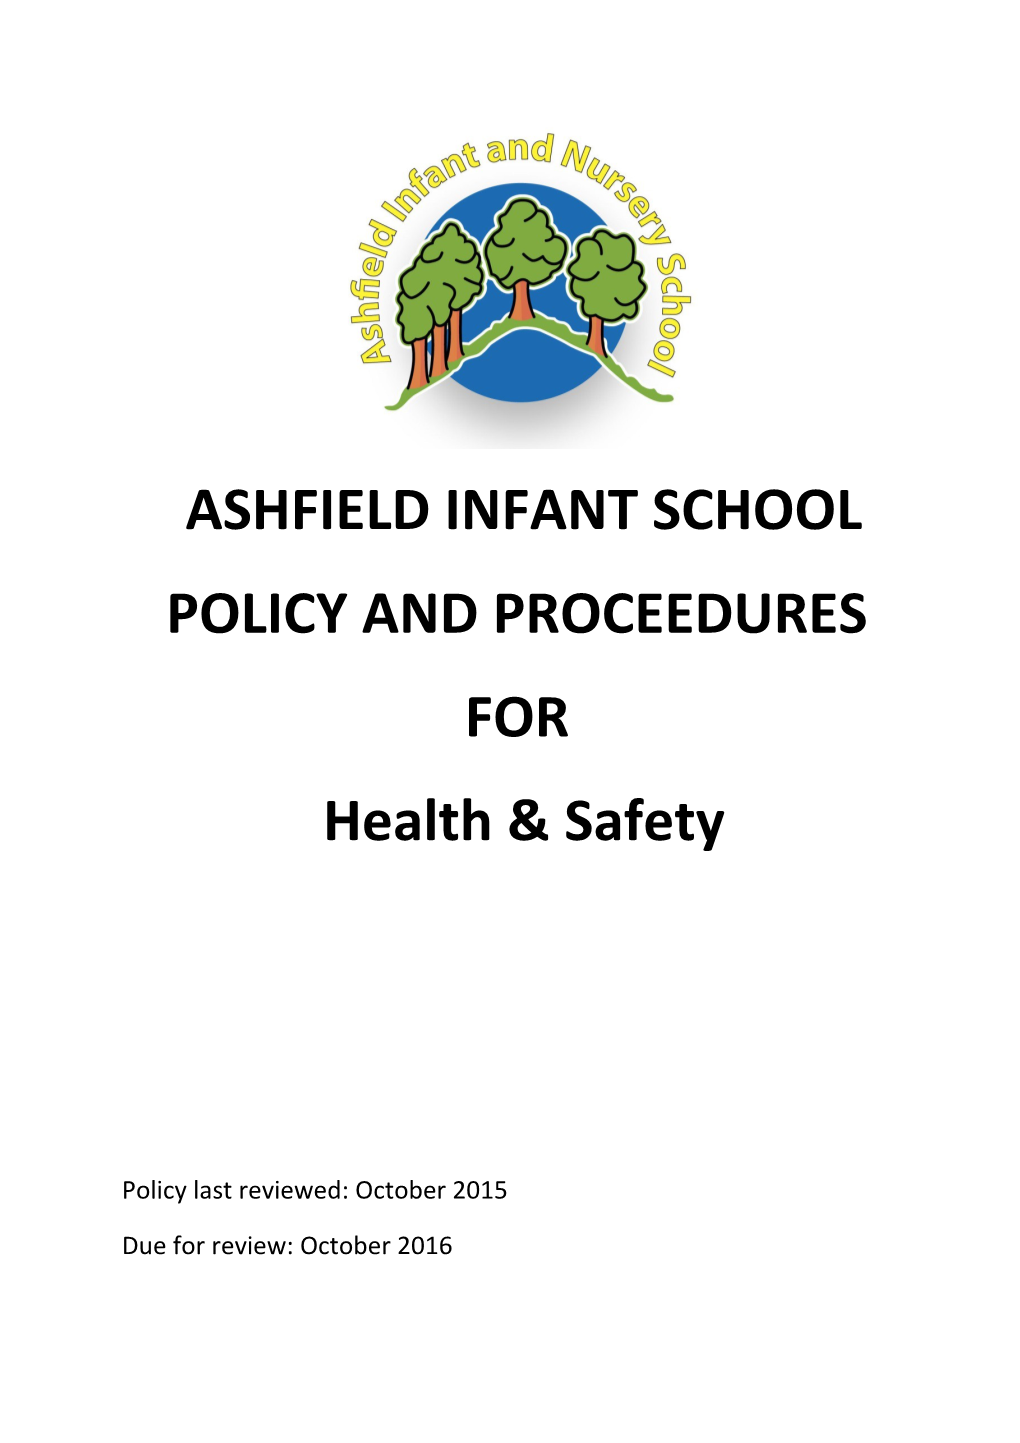 Ashfield Infant School